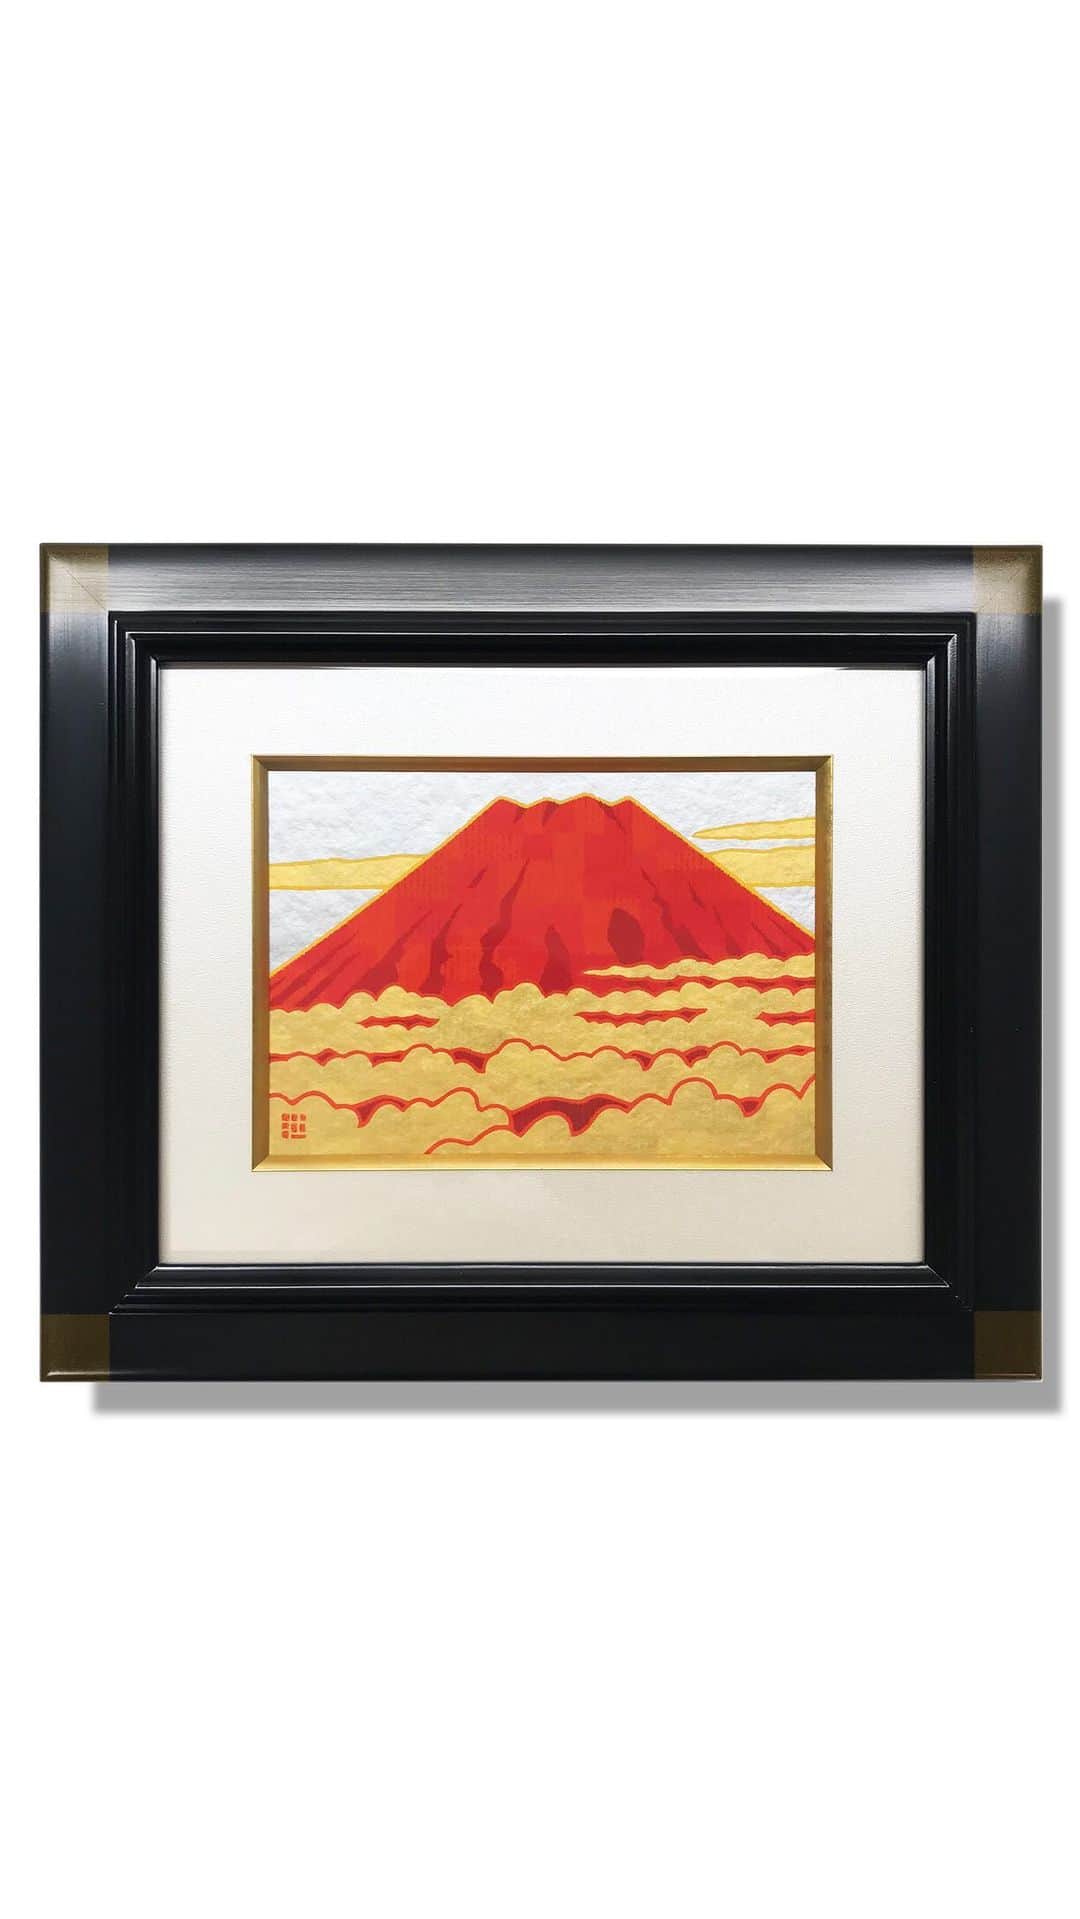 藤谷壮仁郎のインスタグラム：「Mount Fuji painting  digital+analog（mixed media art） >デジタルで下図をなぞる >モノクロでバランスを調整 >カラーで色味を調整 >ジークレー版画（出力）に手彩色 >額装 ・デジタルとアナログ（ジークレー版画に手描きで金色を彩色）でのミクストメディア作品。 ・ ・ @soujirou_art  #富士 #富士山 #赤富士 #絵画 #アート #ミクストメディア #金彩 #額装 #富士山が好き #富士山好きな人と繋がりたい #藤谷壮仁郎  #mtfuji #mountfuji #mtfujijapan #fujiyama #art #artist #painter #painting #mixedmedia #mixedmediaart #artwork #instaart #soujirou #japan」